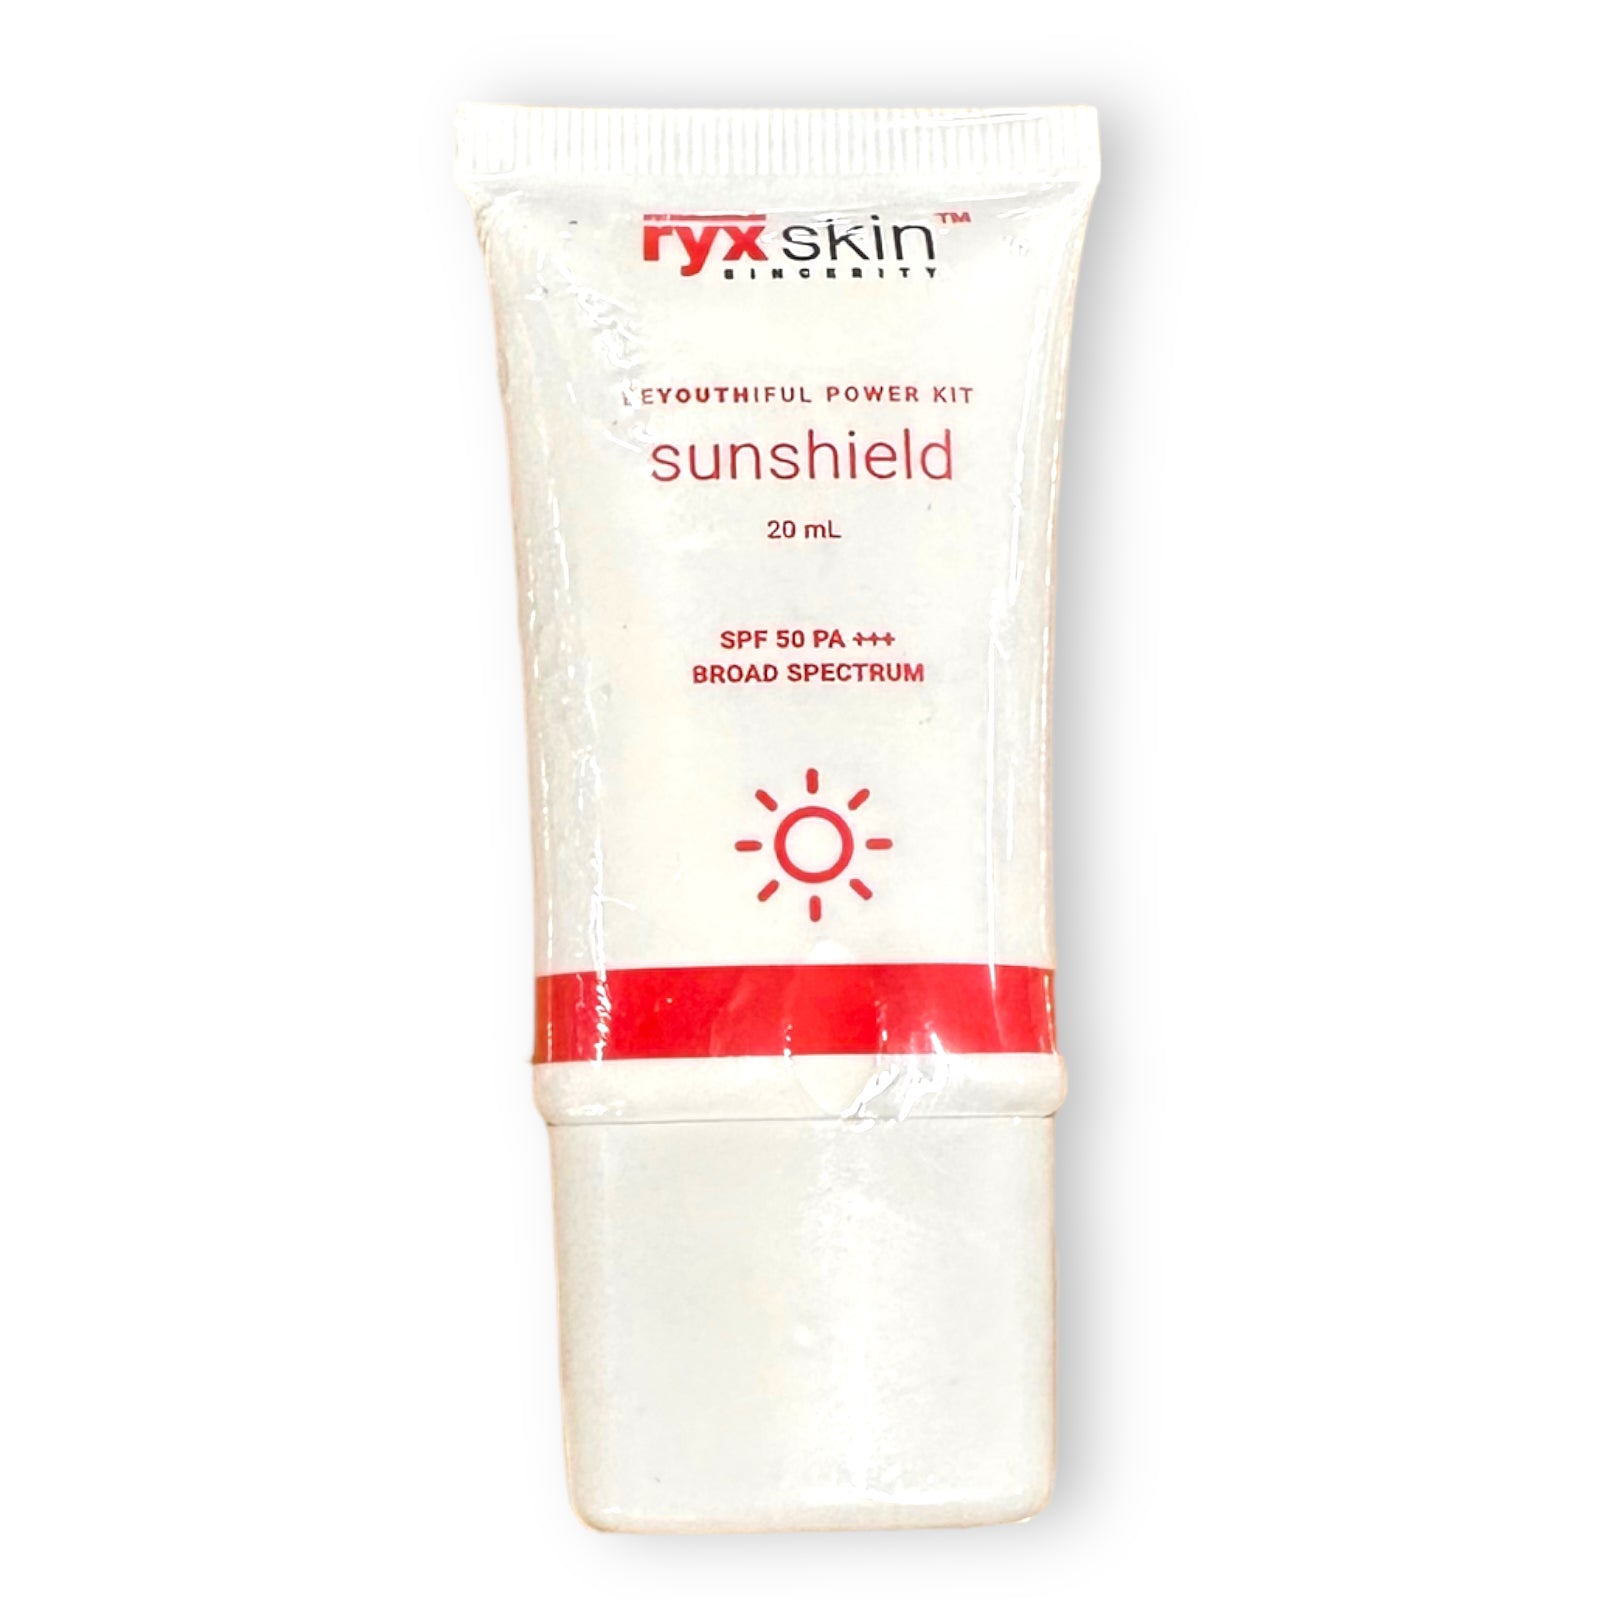 Ryx Skin Beyouthiful Power Kit Sunshield SPF 50 PA+++ -  20g